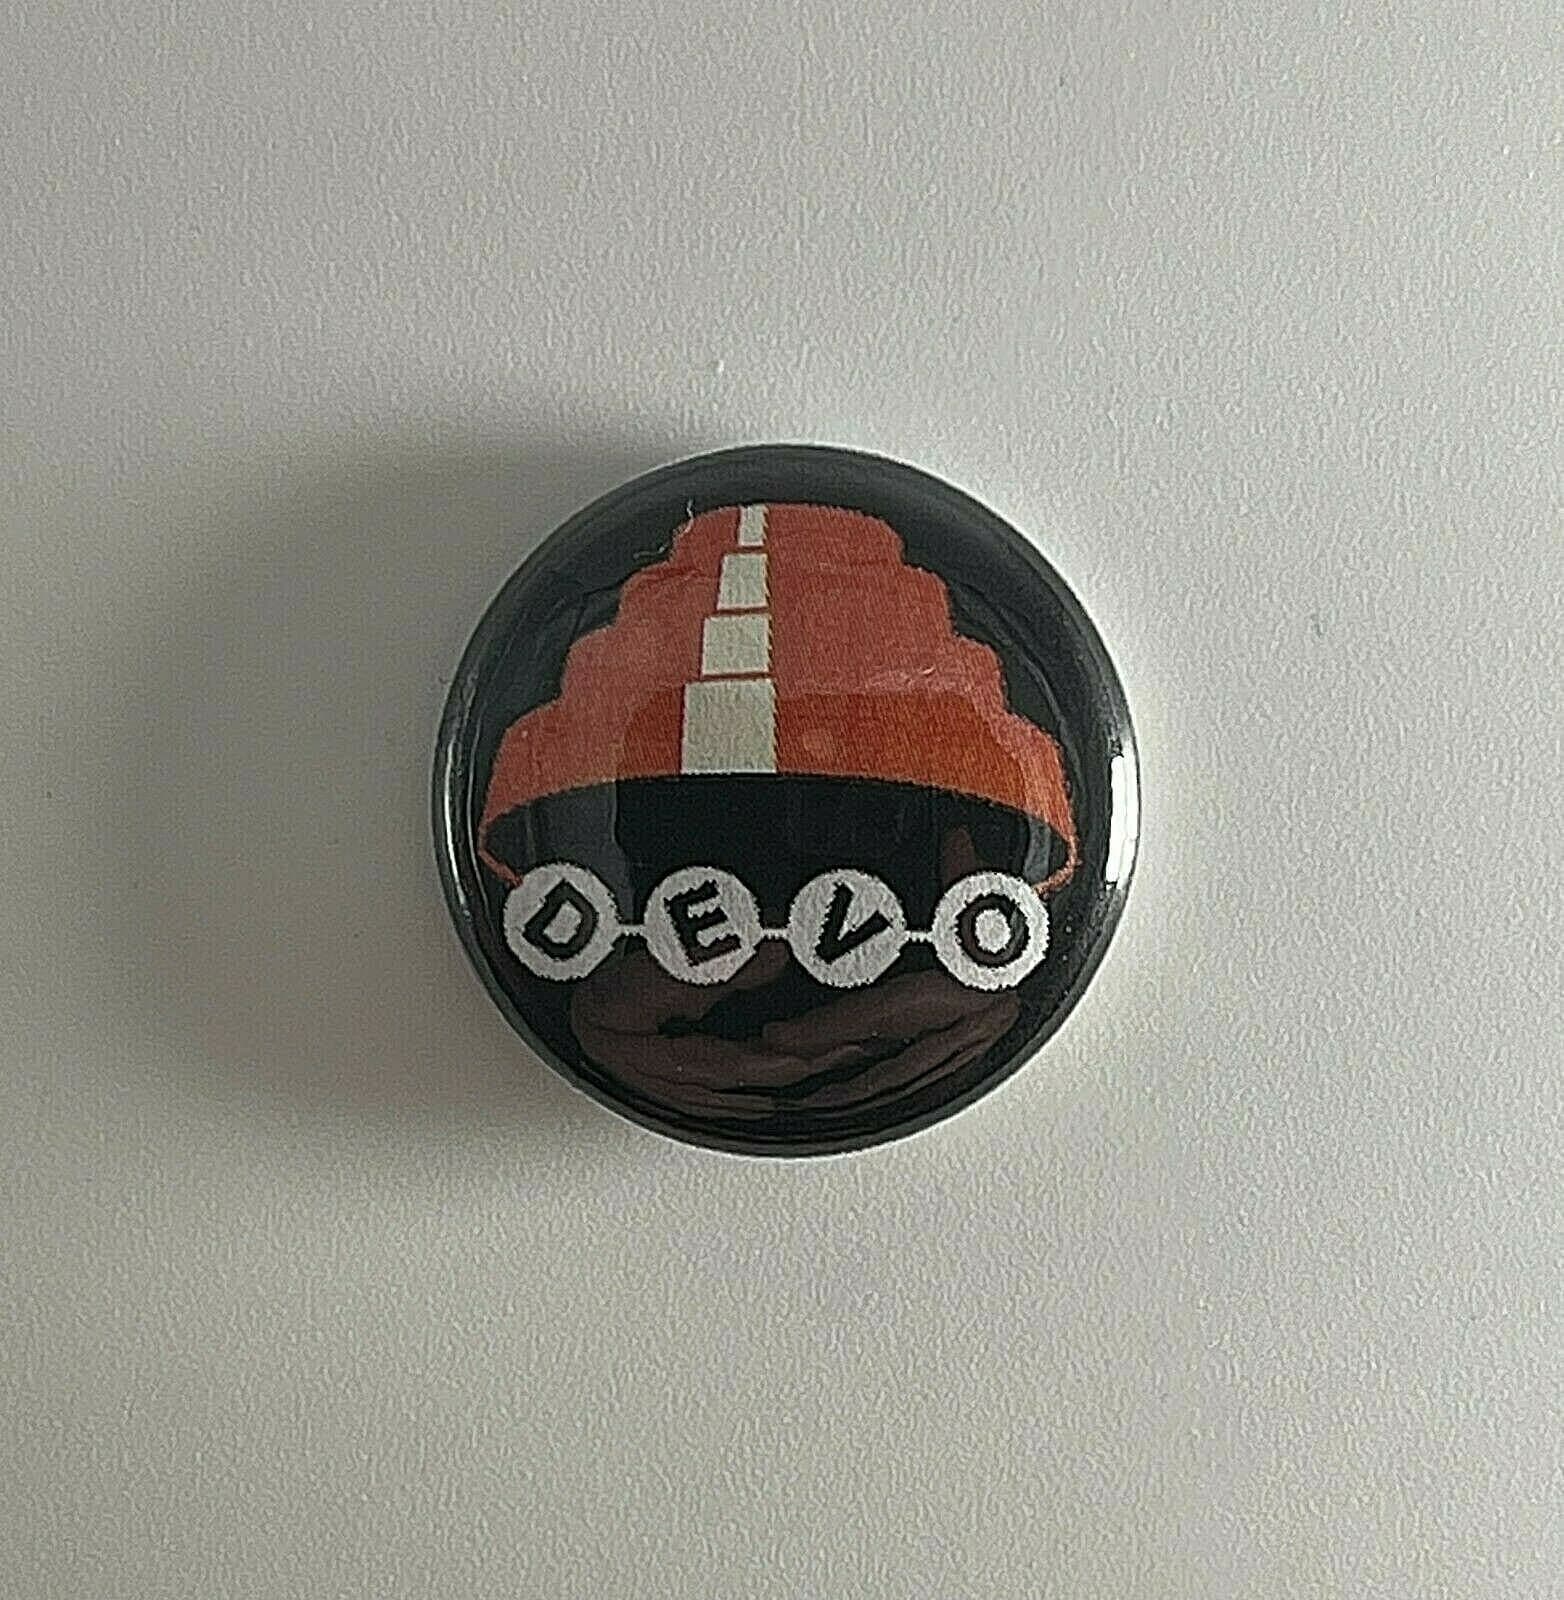 Devo Energy Dome 1 "Button D015B Pin Badge von Heavylowmerchandise